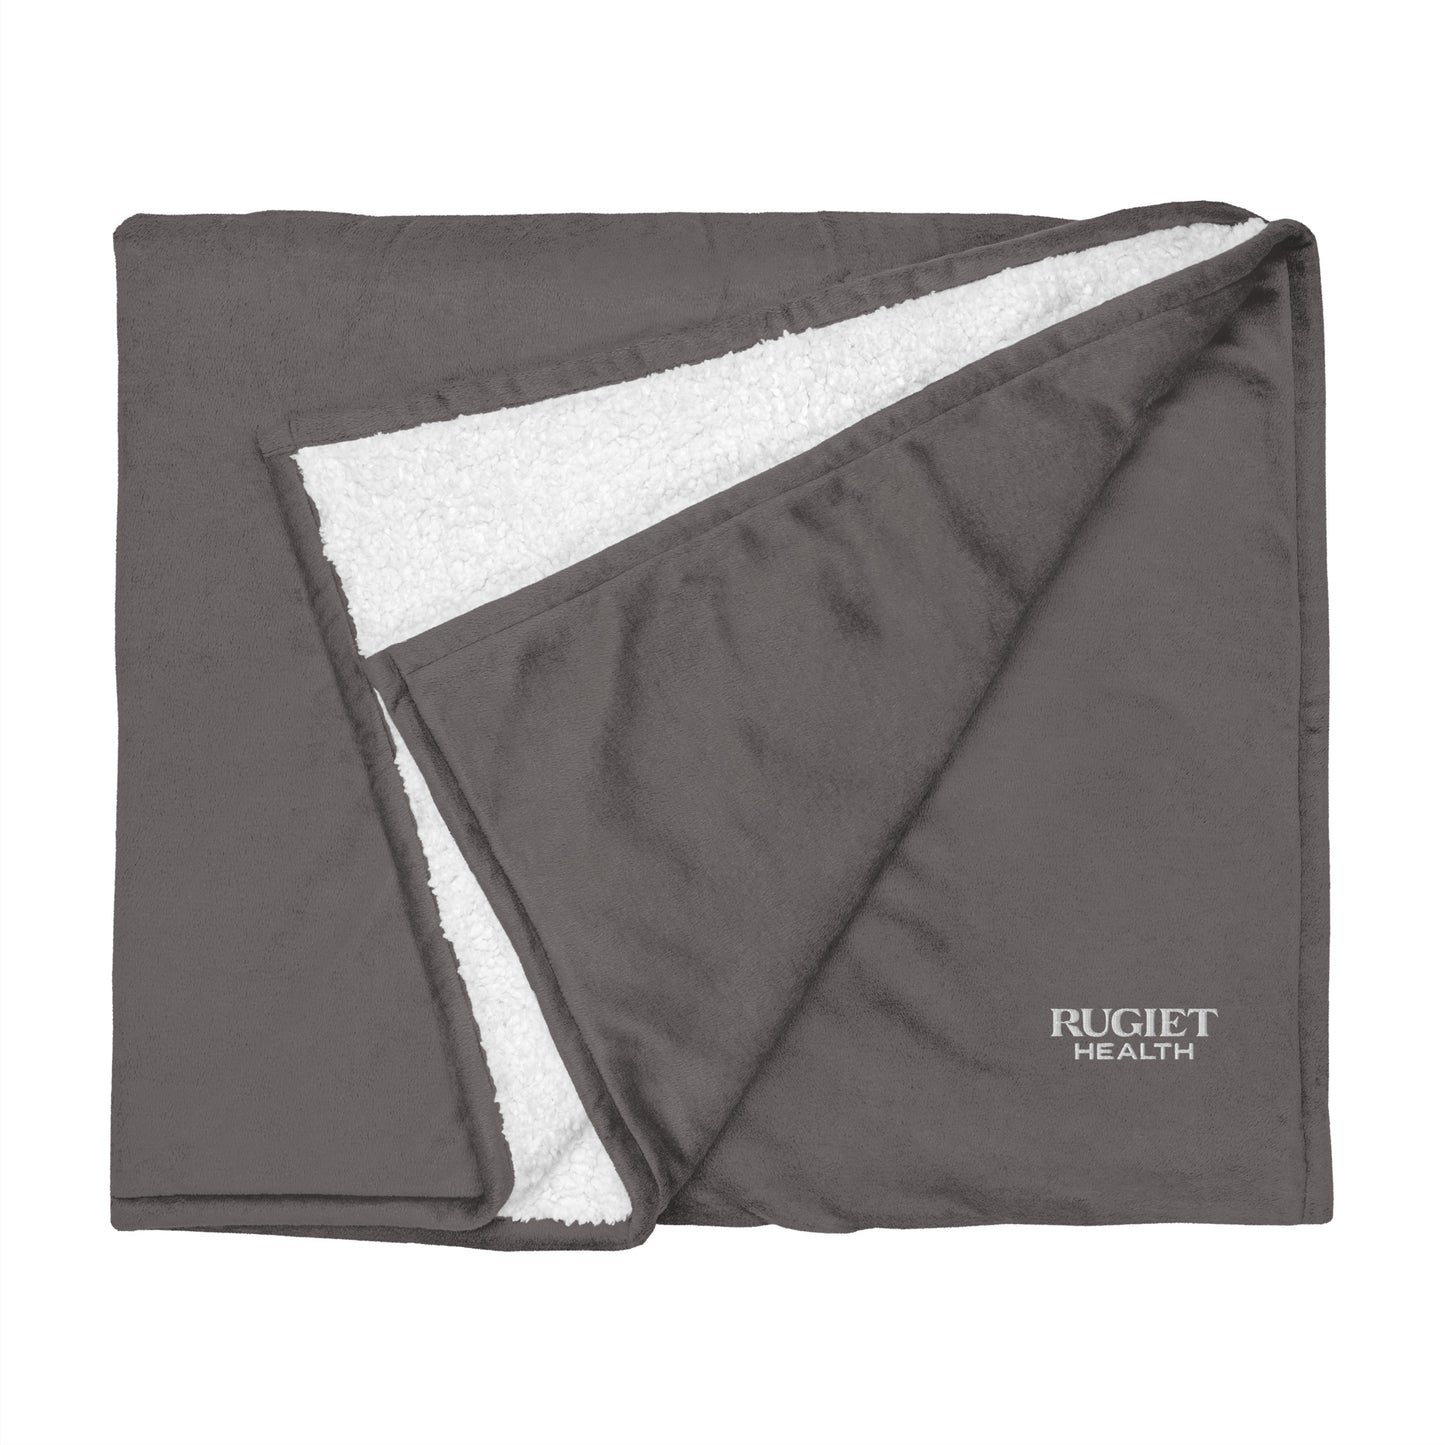 Premium sherpa blanket - Rugiet Health